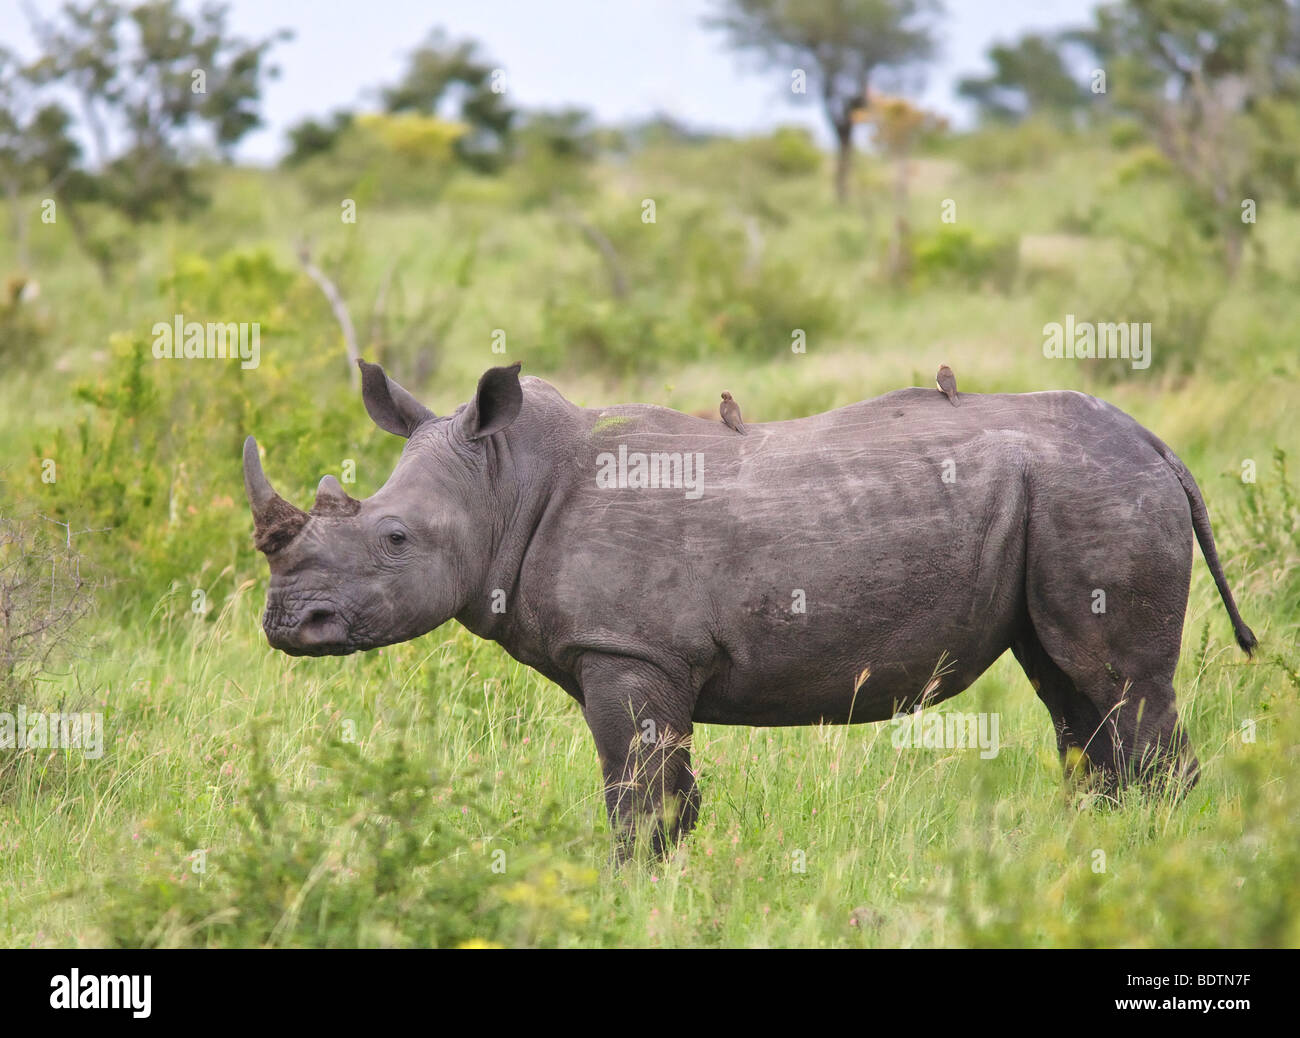 Rhinocéros blancs (Ceratotherium simum) rhinocéros à lèvres carrées avec Oxpeckers. Une espèce en voie de disparition dans le parc national Kruger, en Afrique du Sud. Banque D'Images